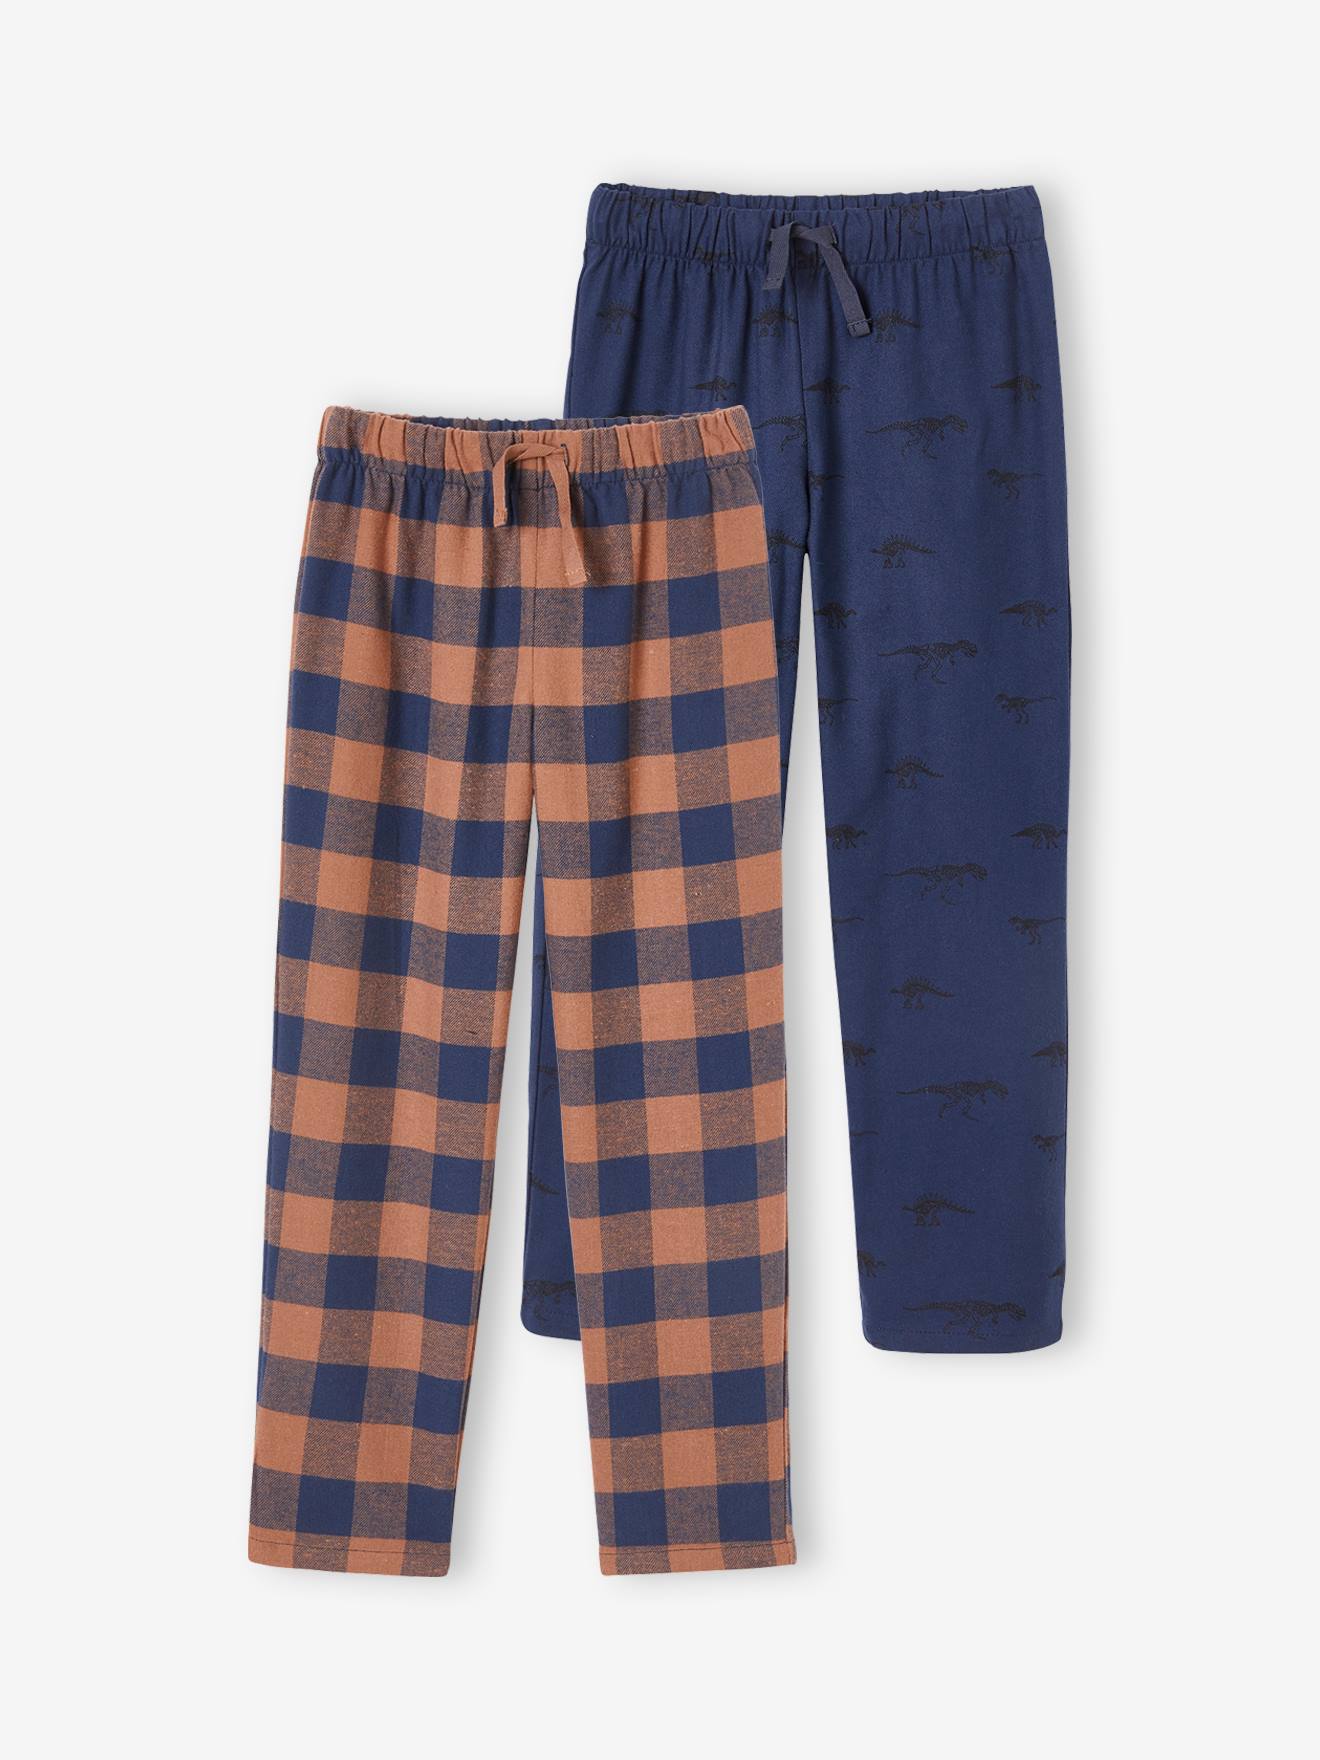 Set met 2 pyjamabroeken in flanel voor jongens set bruin en blauw